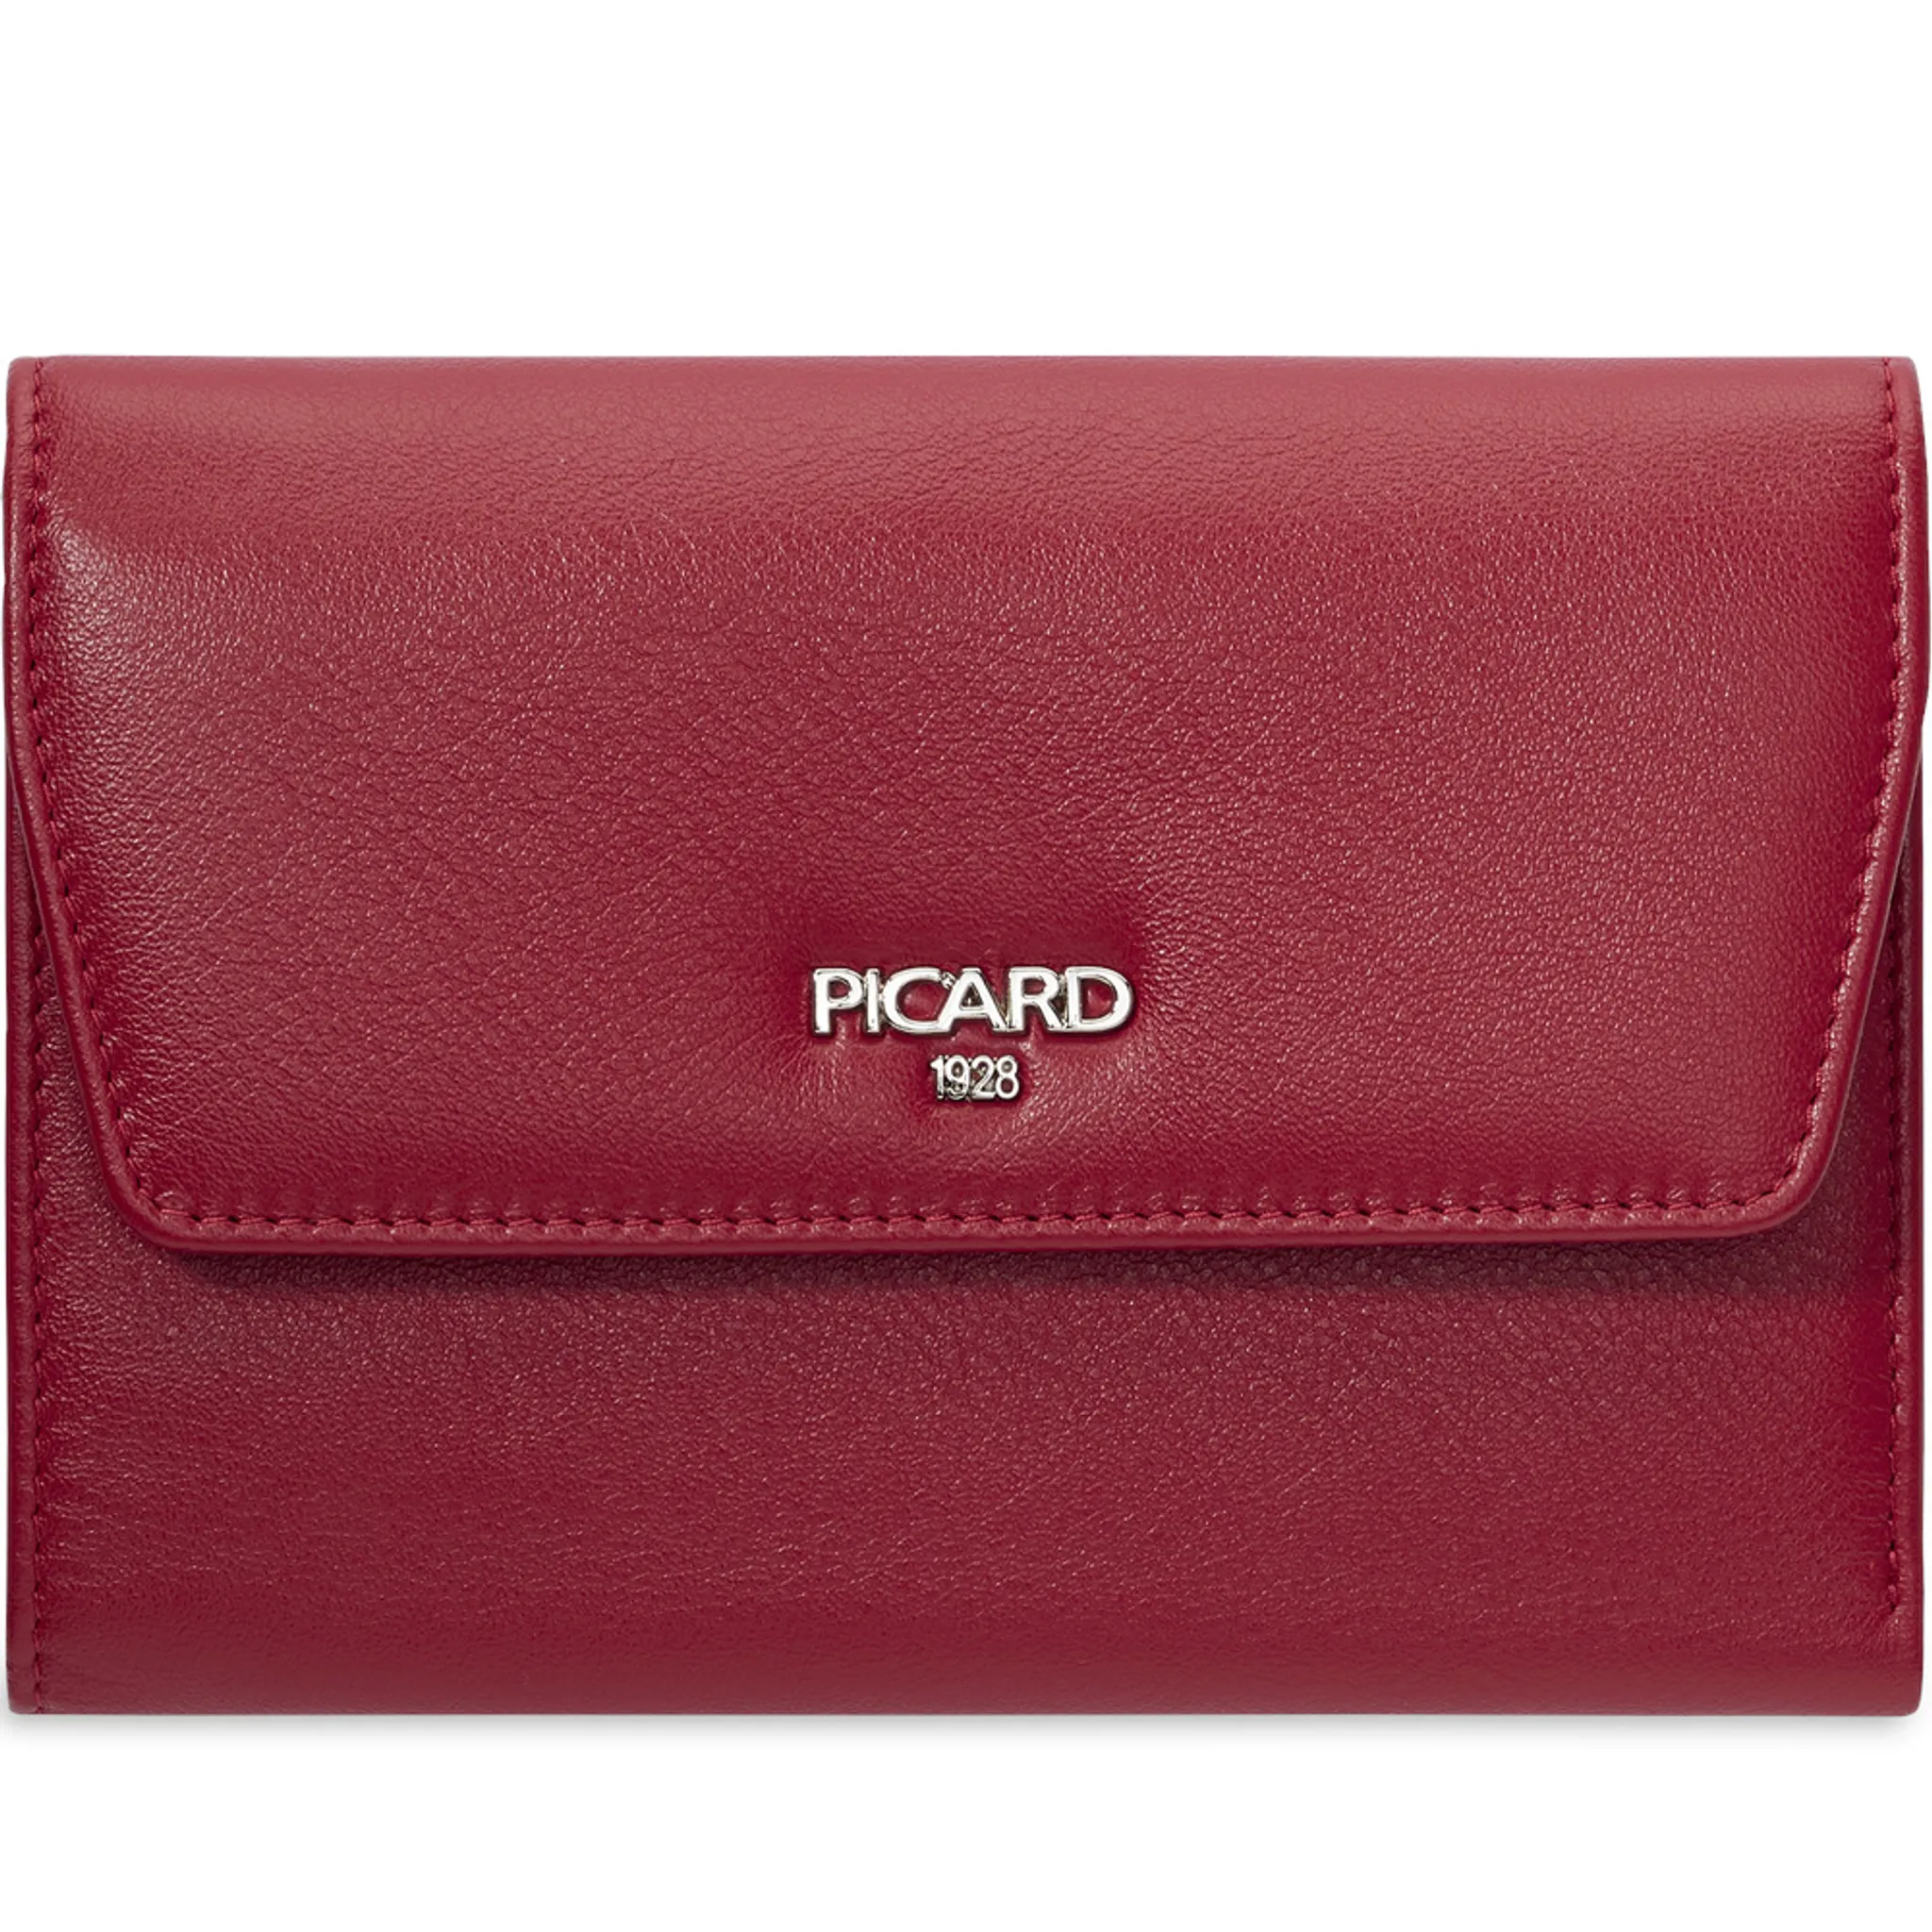 Picard Bingo Damen Geldbörse stone Mode & Accessoires Taschen Kleinlederwaren Portemonnaies 